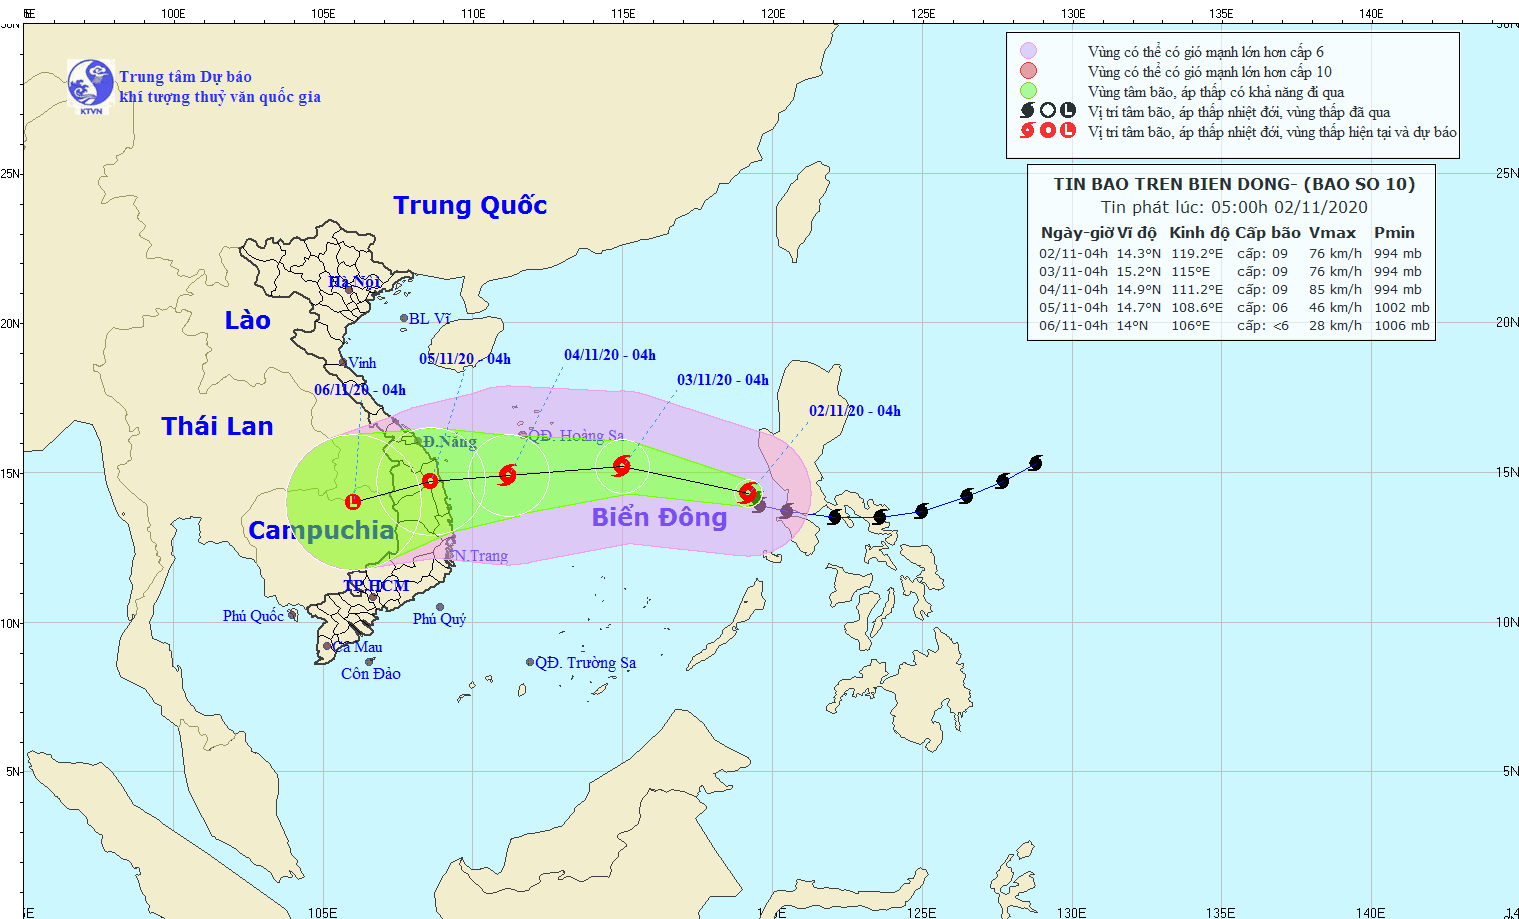 Siêu bão Goni giật cấp 12 tiến vào biển Đông, diễn biến phức tạp khi liên tục tăng giảm cấp - Ảnh 1.